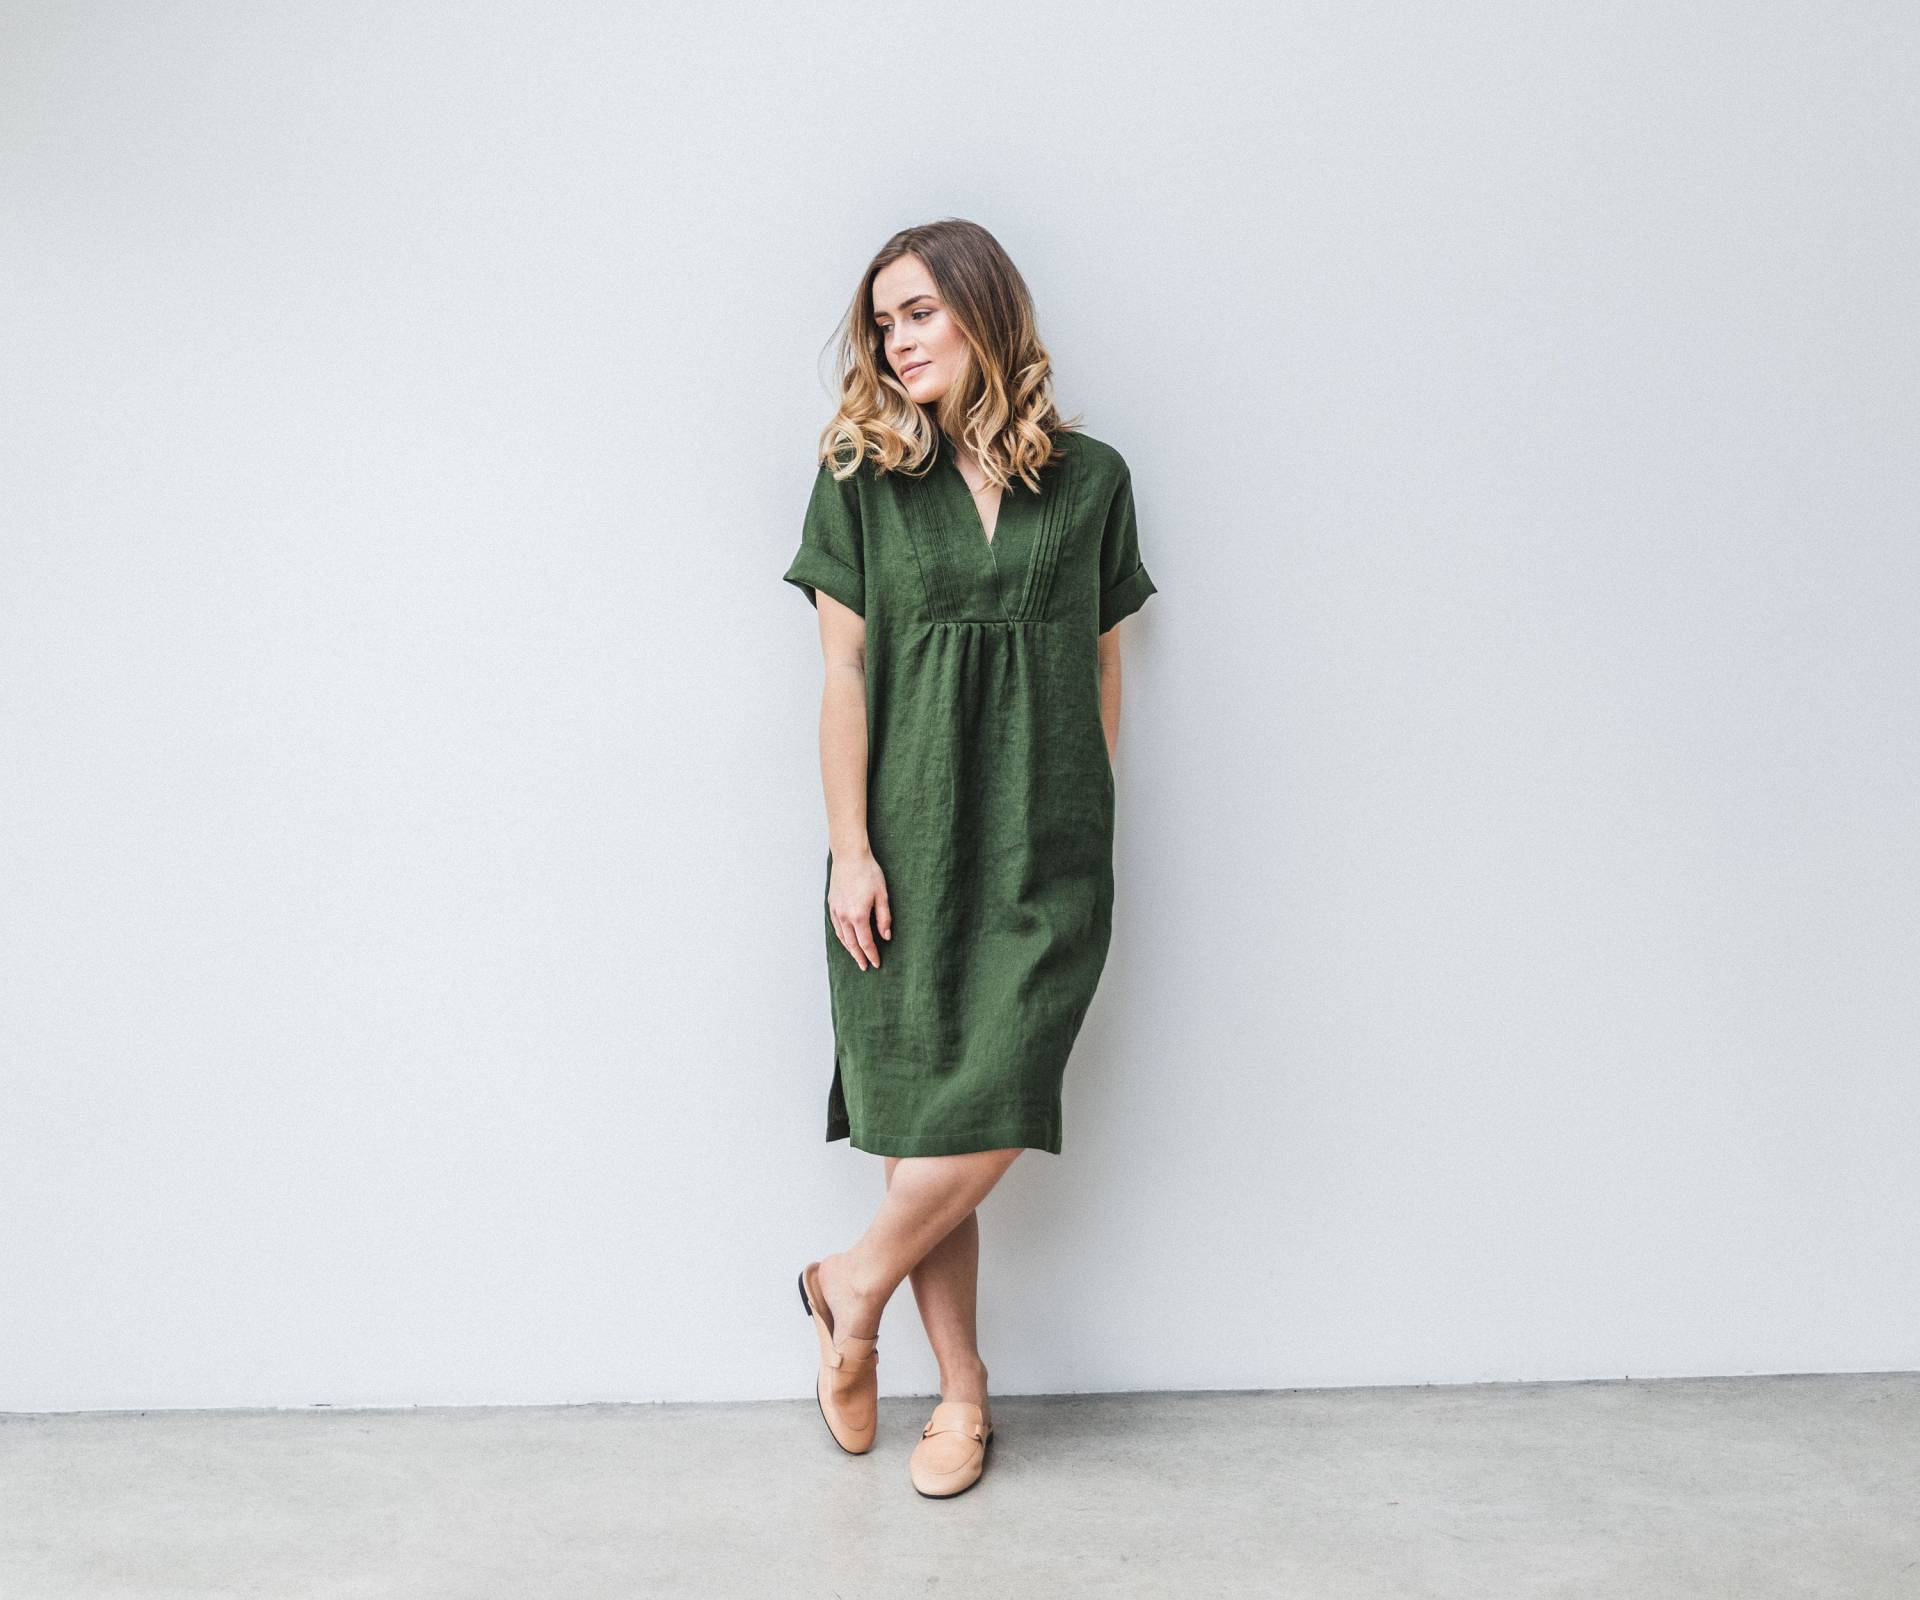 Modernes Leinenkleid Haselnuss in Waldgrüner Farbe. Tunika Kleid Aus Leinen 47 Farben. Sommerliches Trendkleid Mit Geteiltem Halsausschnitt von LinenDi